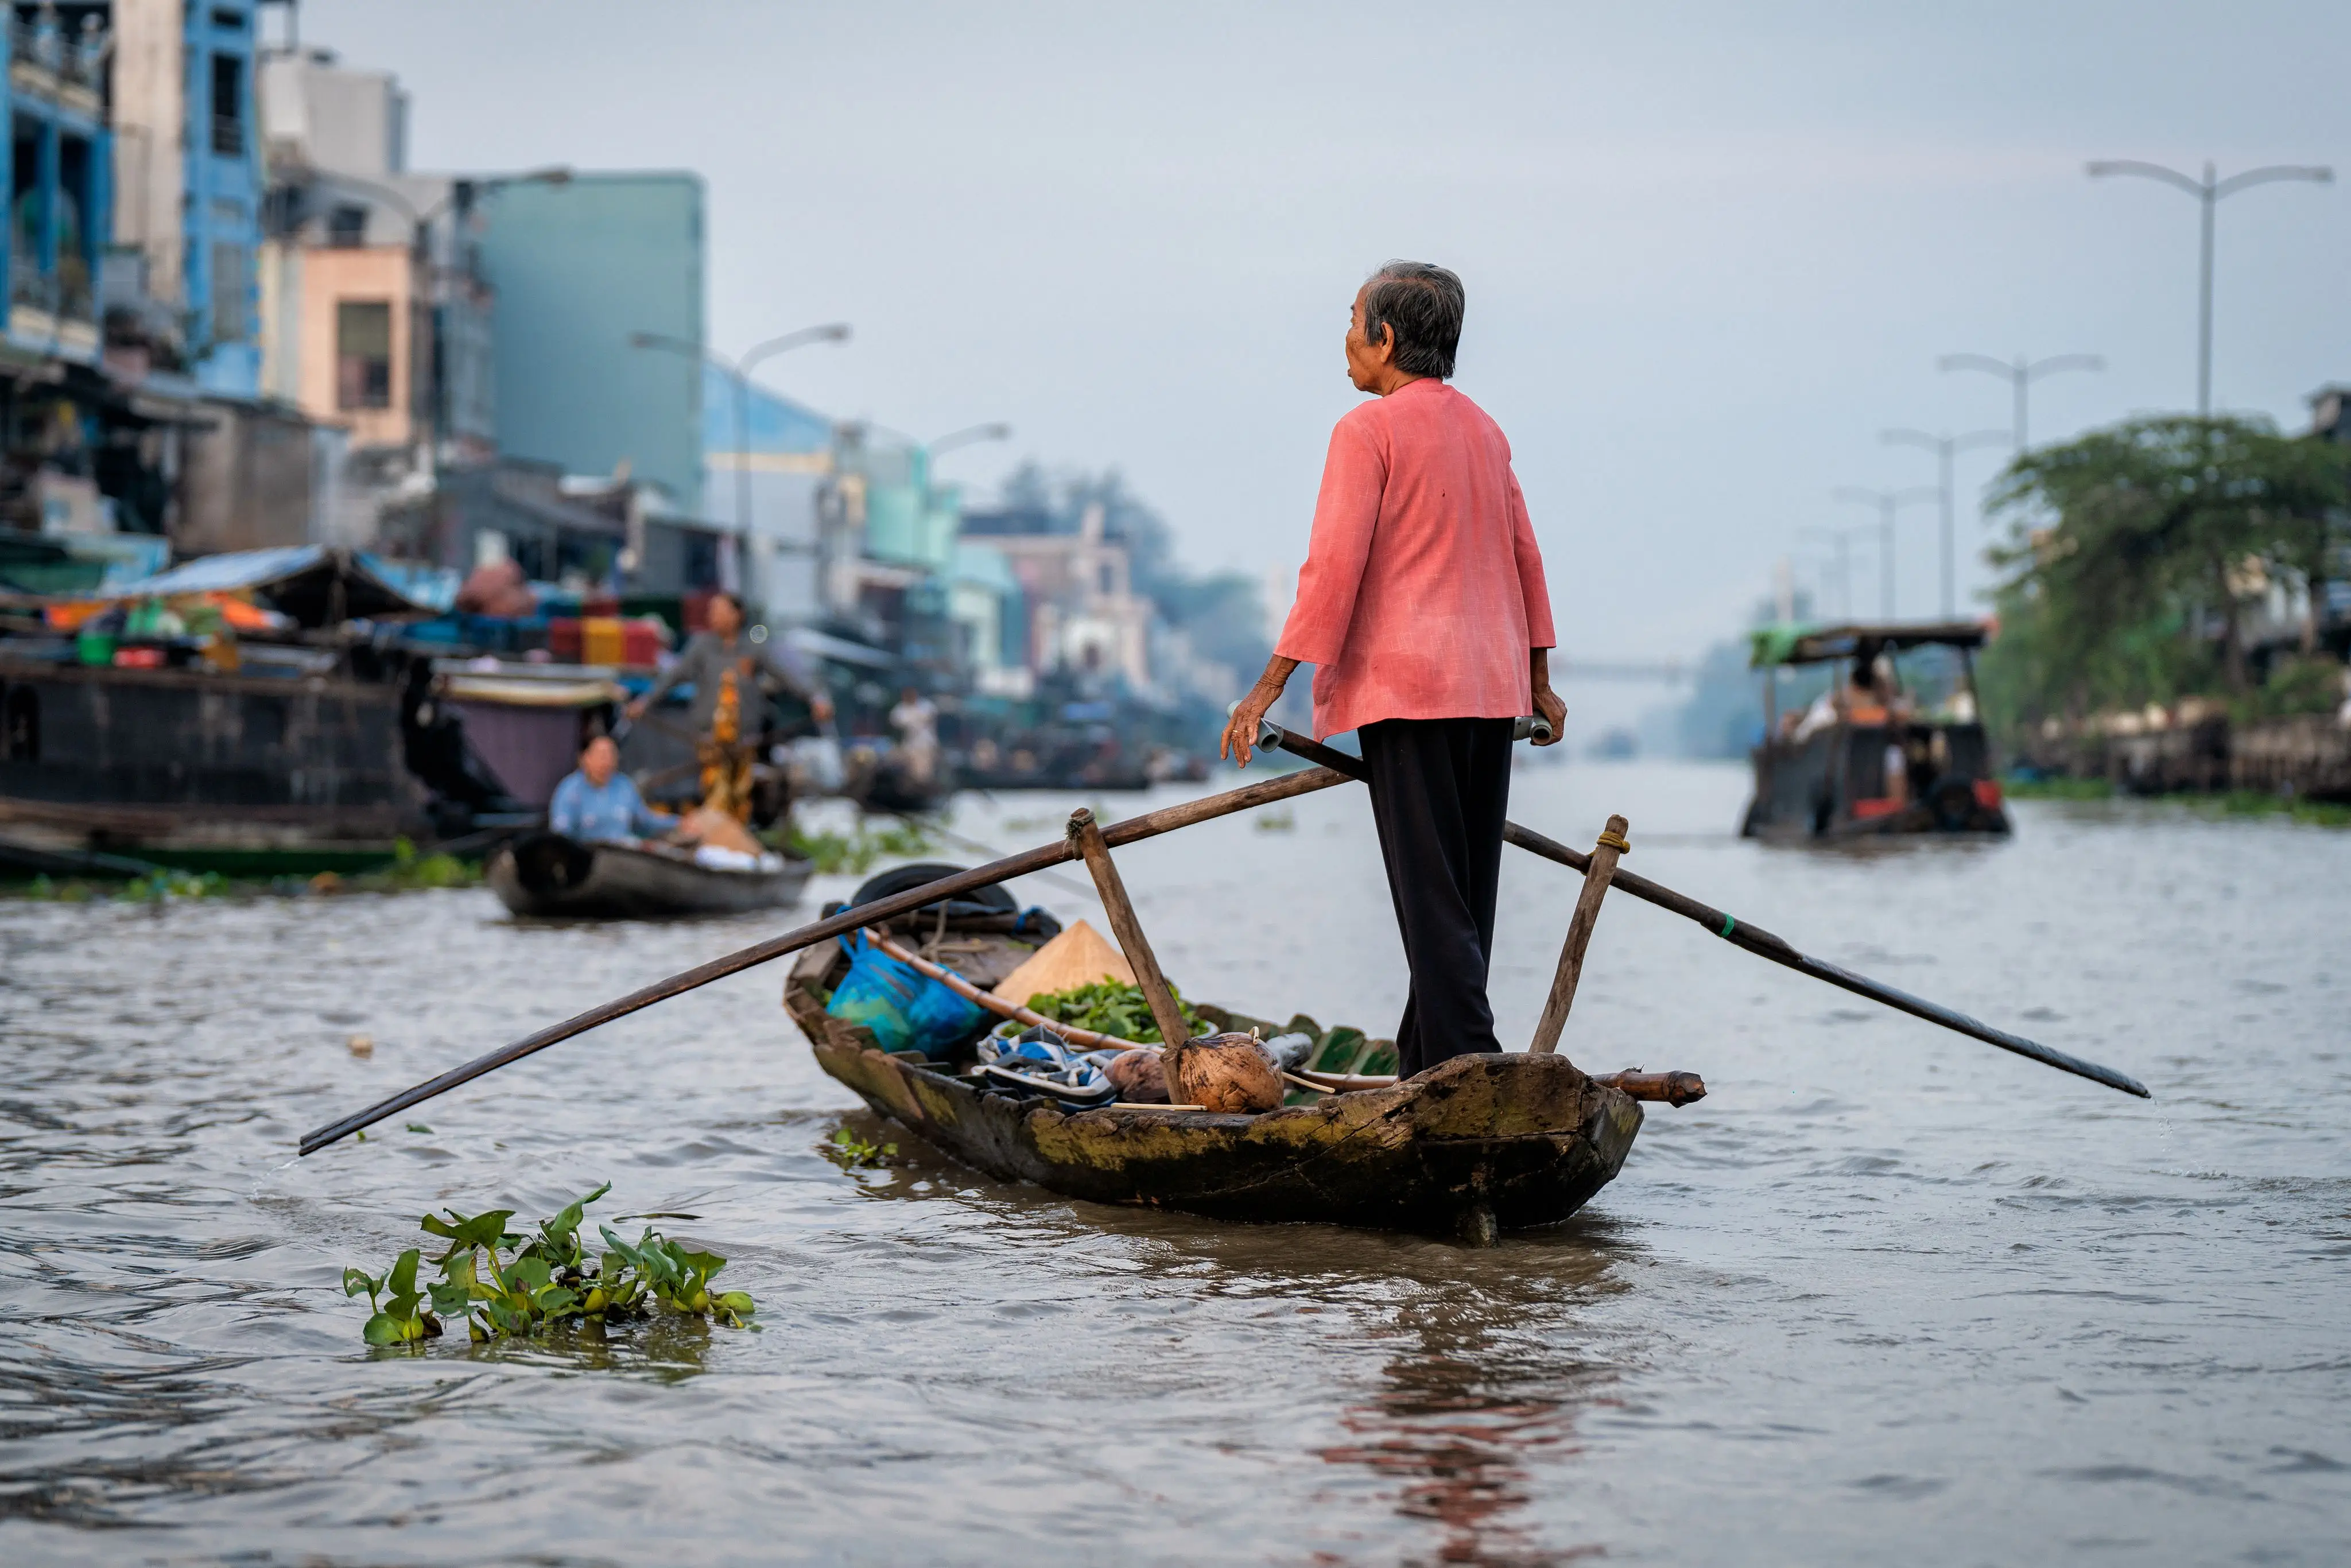 Mekong Delta 1 Day Tour A Journey Through the Heart of Vietnam